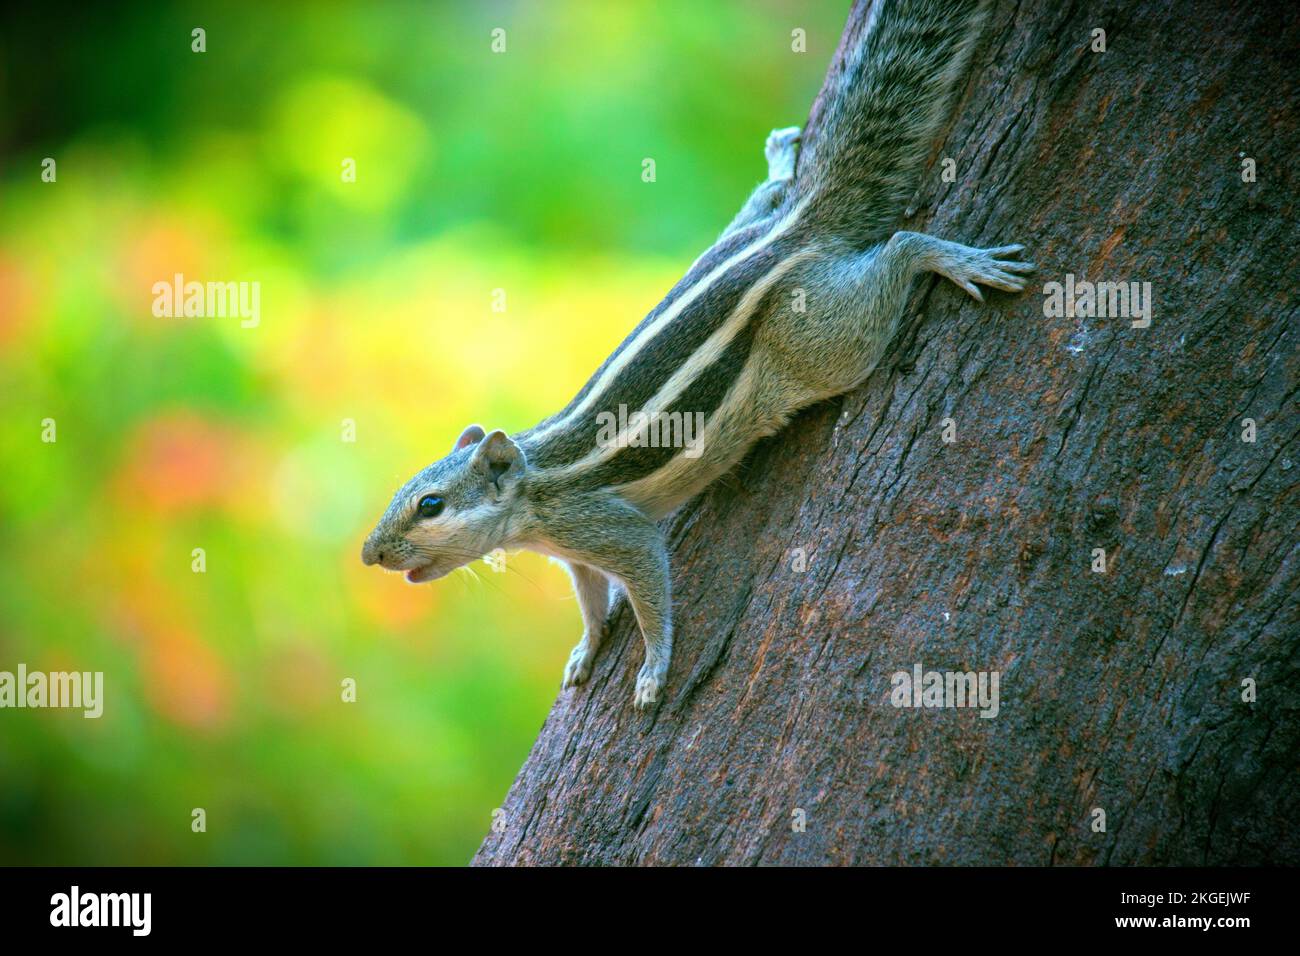 Eichhörnchen, auch bekannt als India Palm Eichhörnchen, das den Baumstamm hinuntergeht und in die Kamera schaut vor grünem Hintergrund Stockfoto